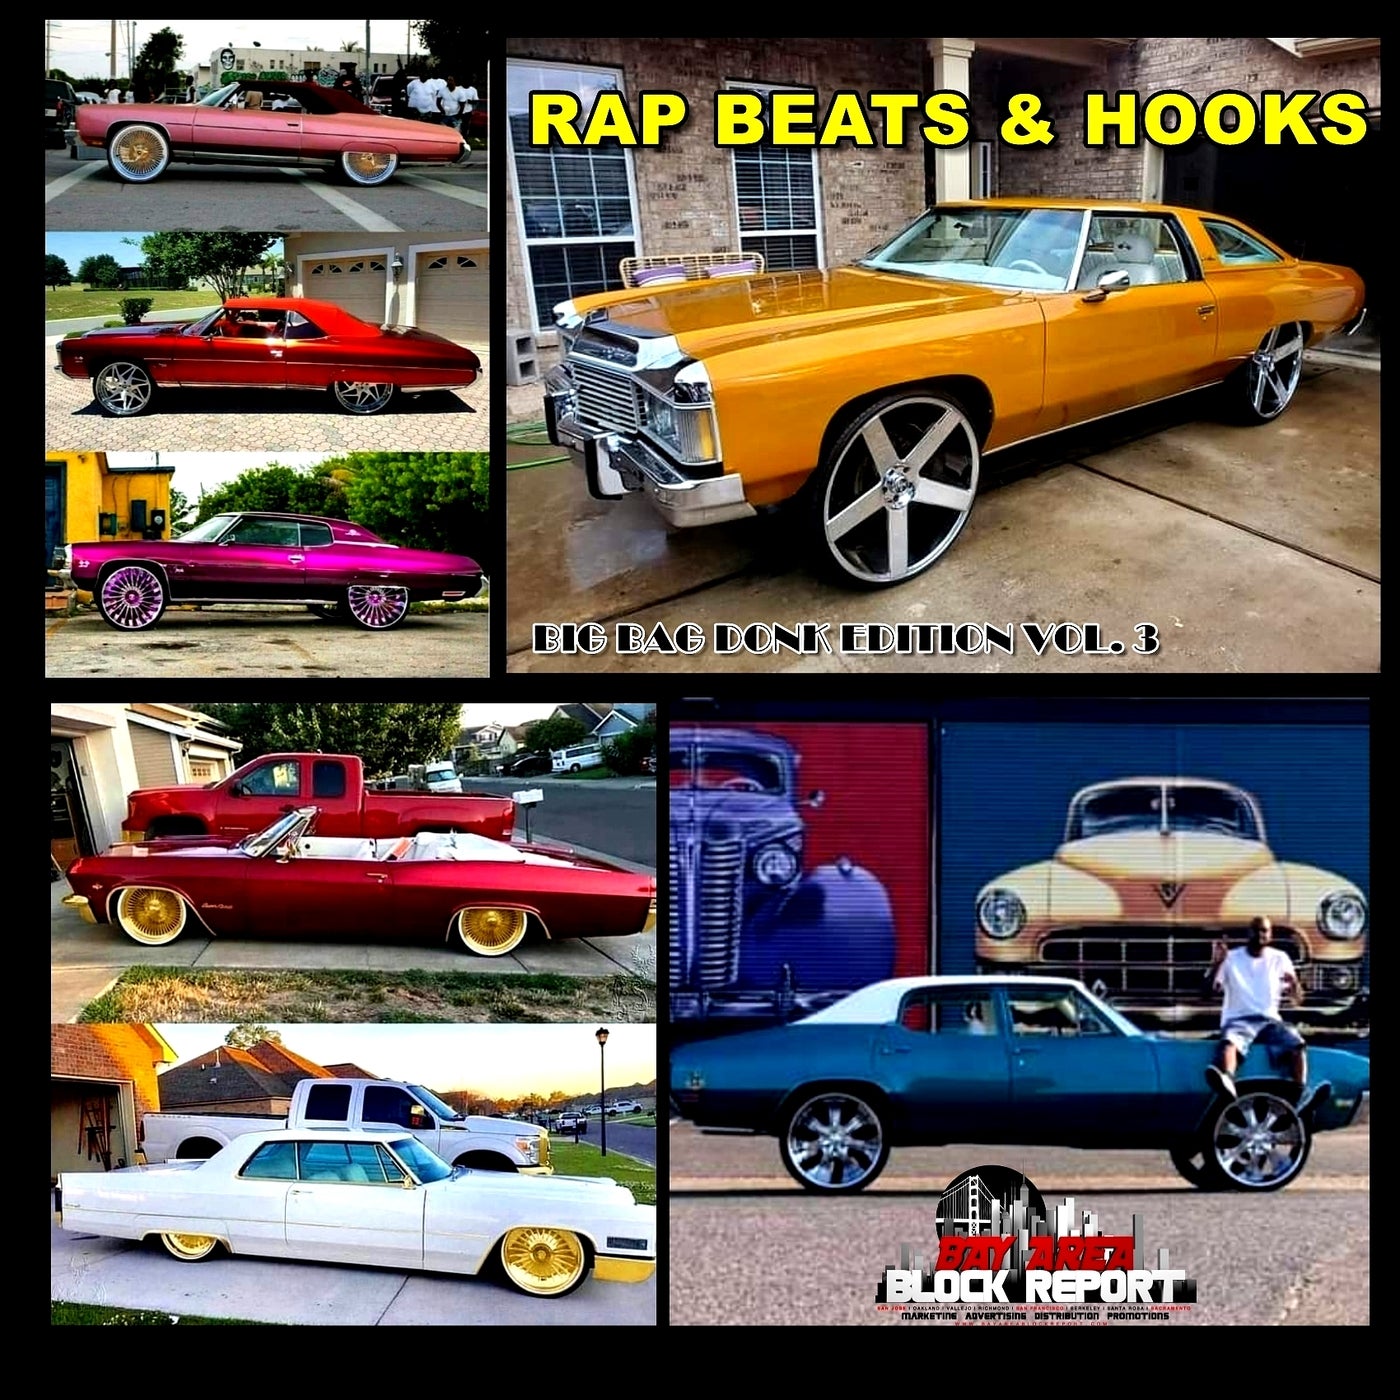 Rap Beats & Hooks, Vol. 3